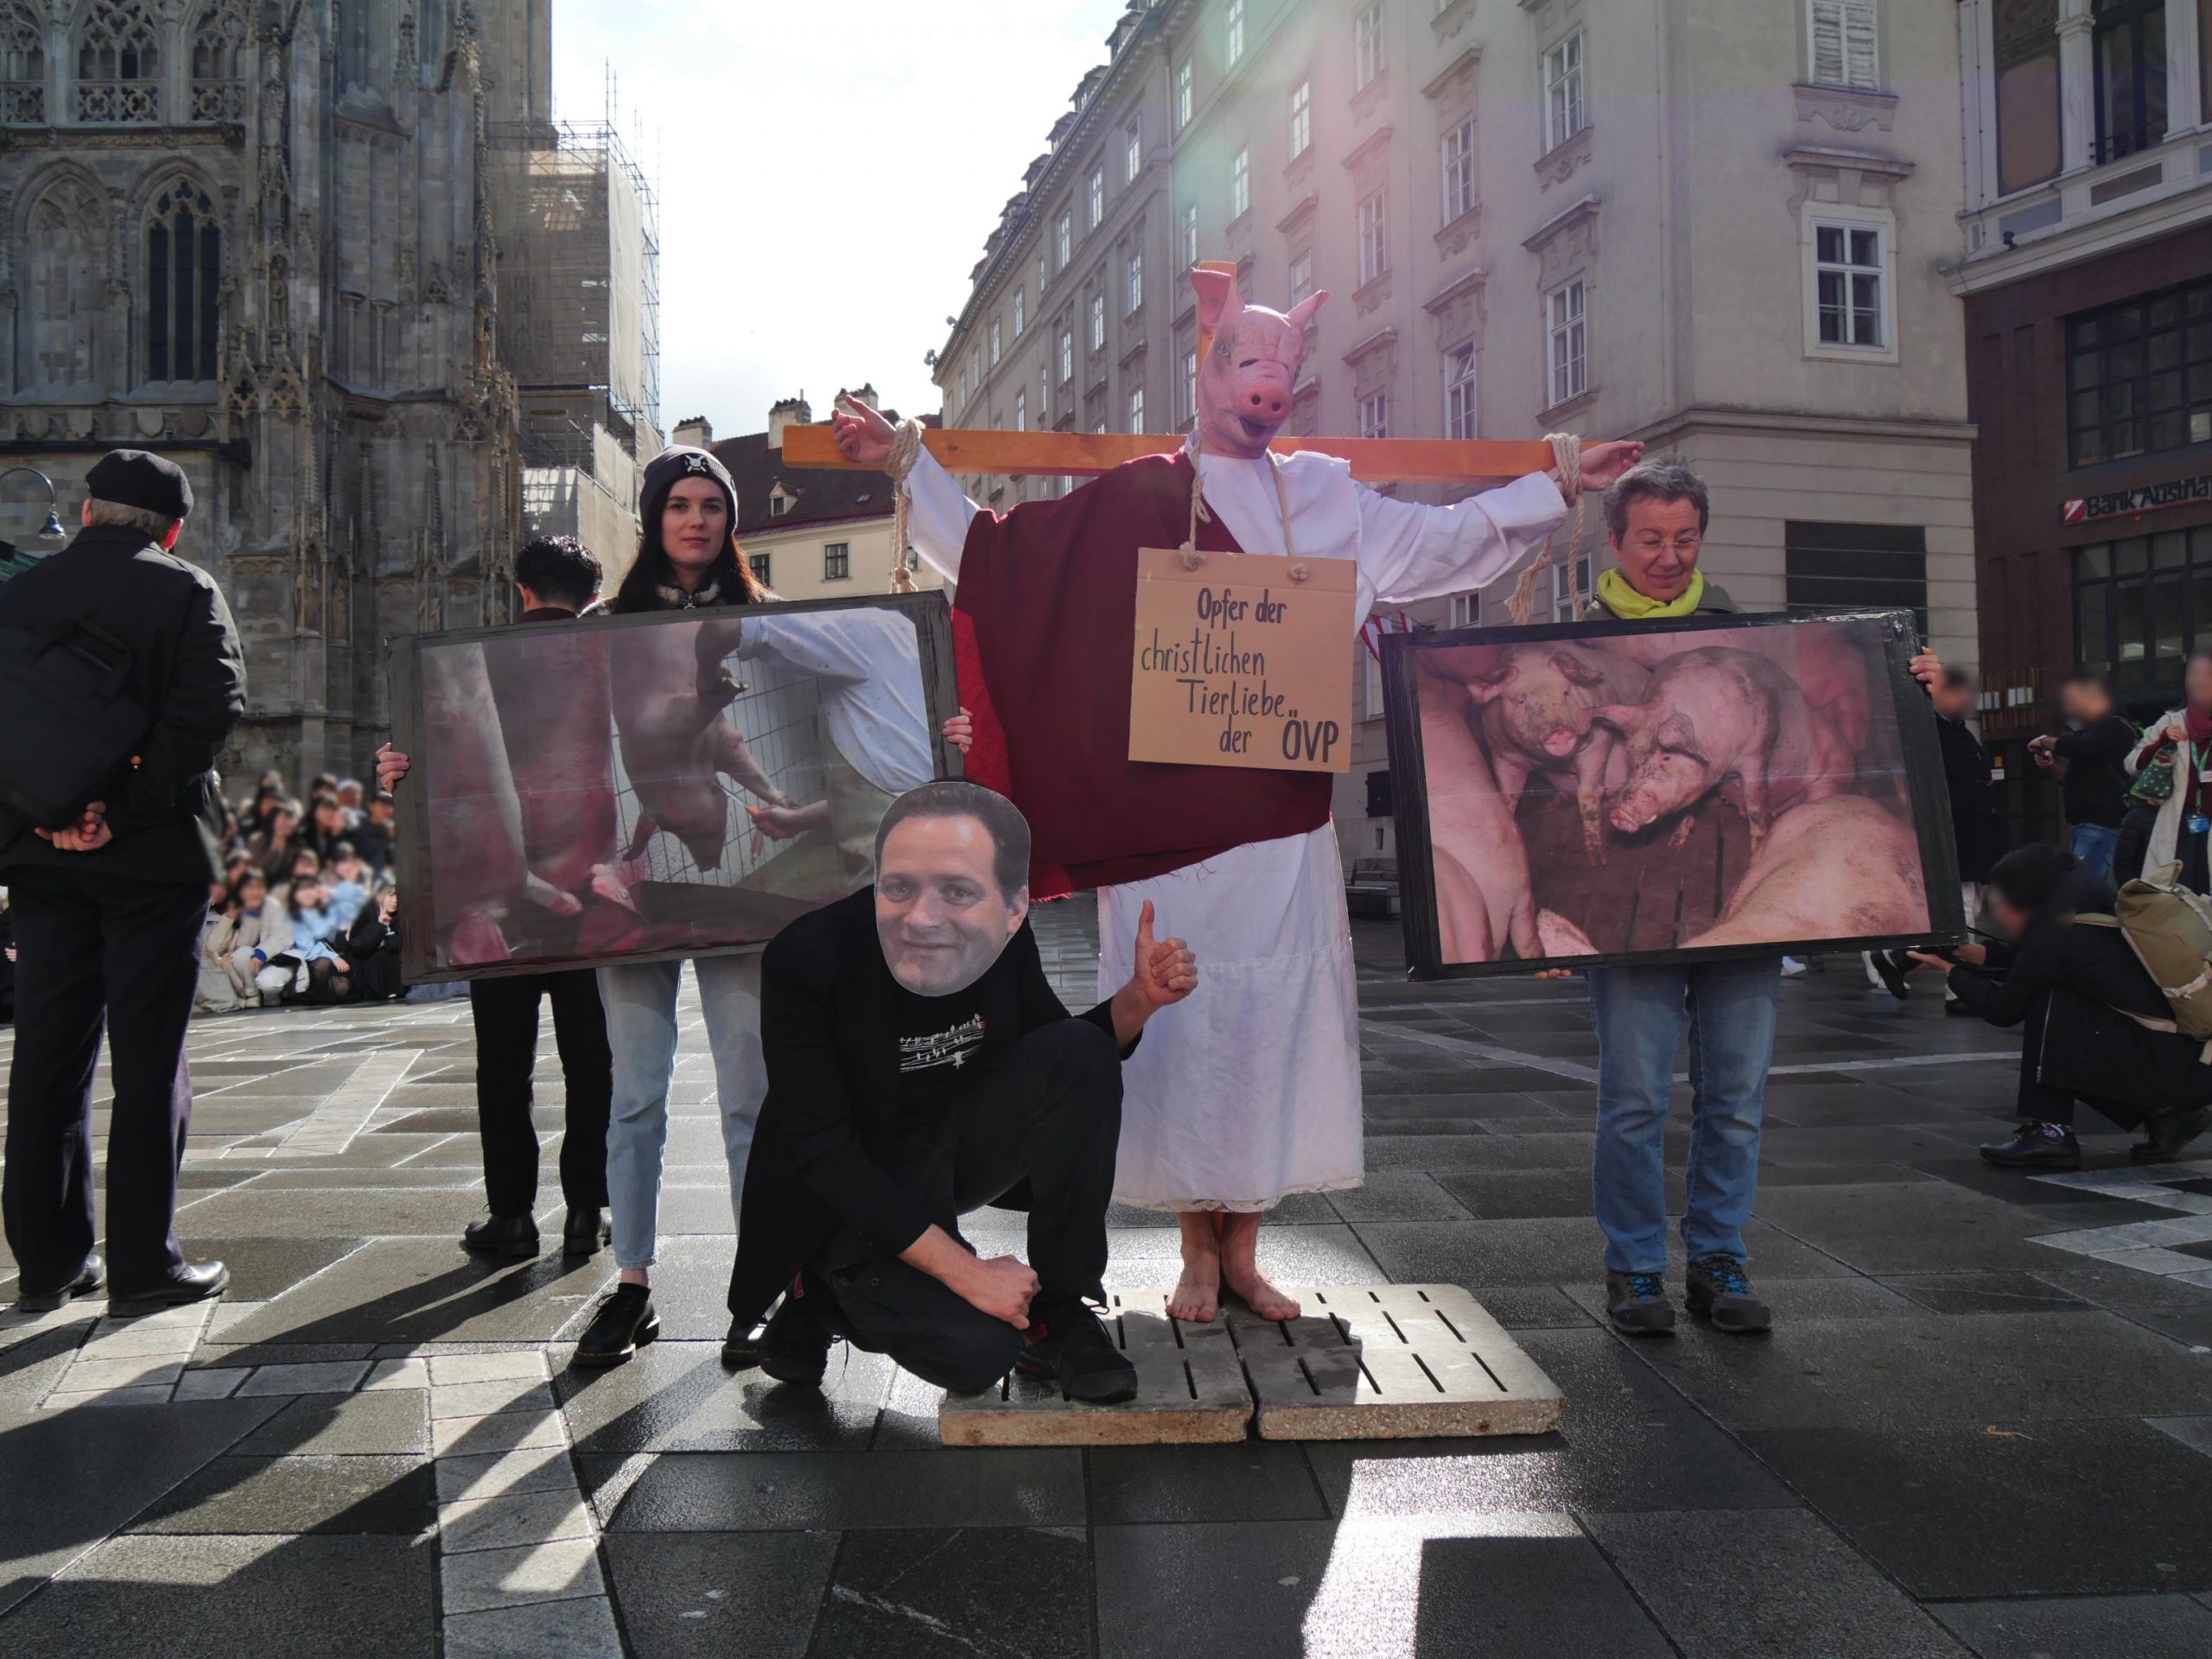 aktion zum gründonnerstag in wien: aktivist mit totschnig-maske kreuzigt schwein